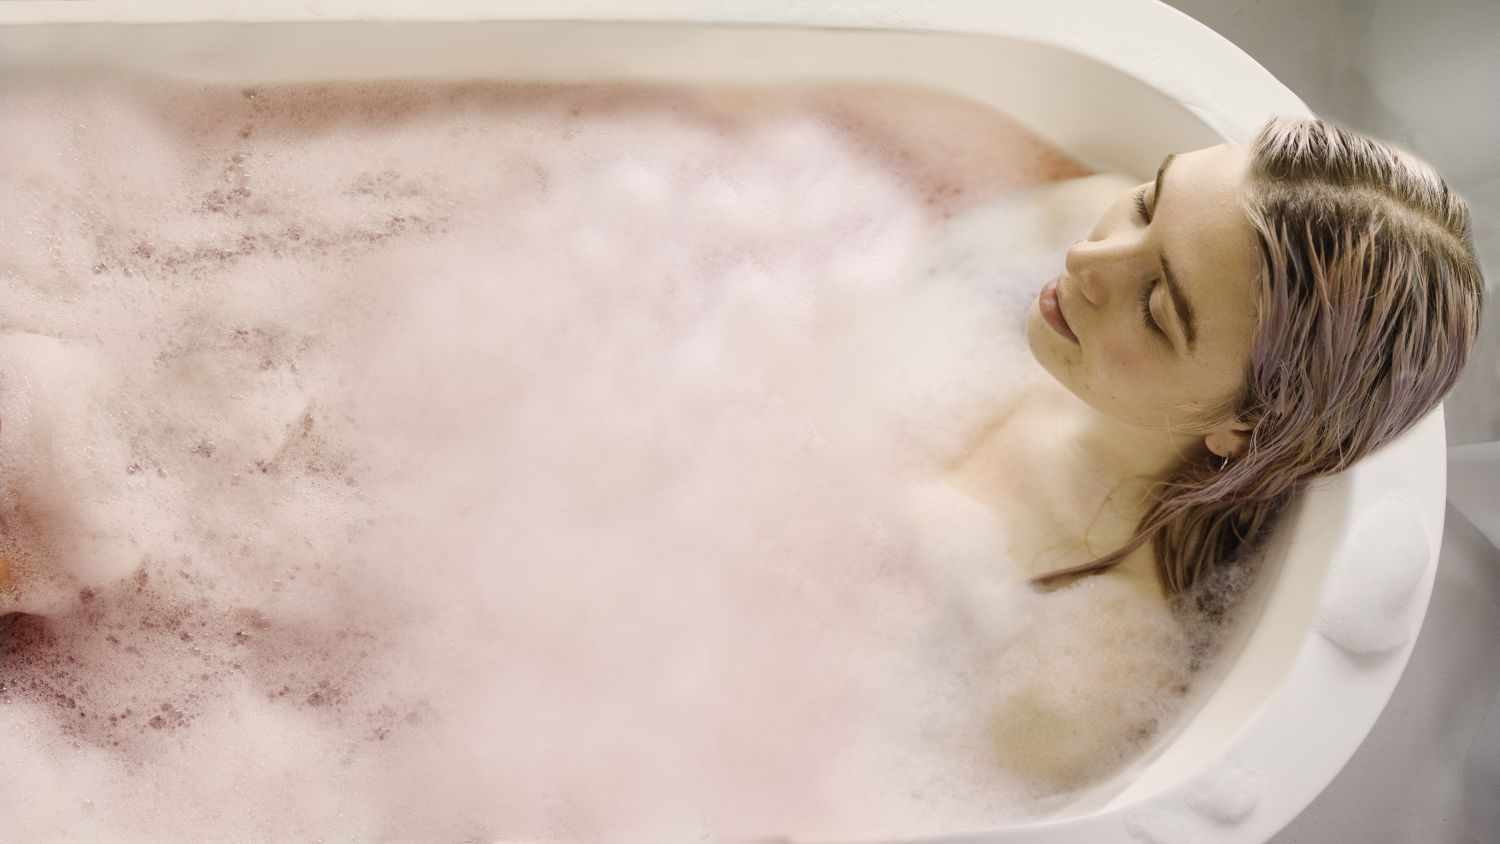 Wellness-hétvége helyett kádfürdő: így lesz tökéletes a relax otthon is